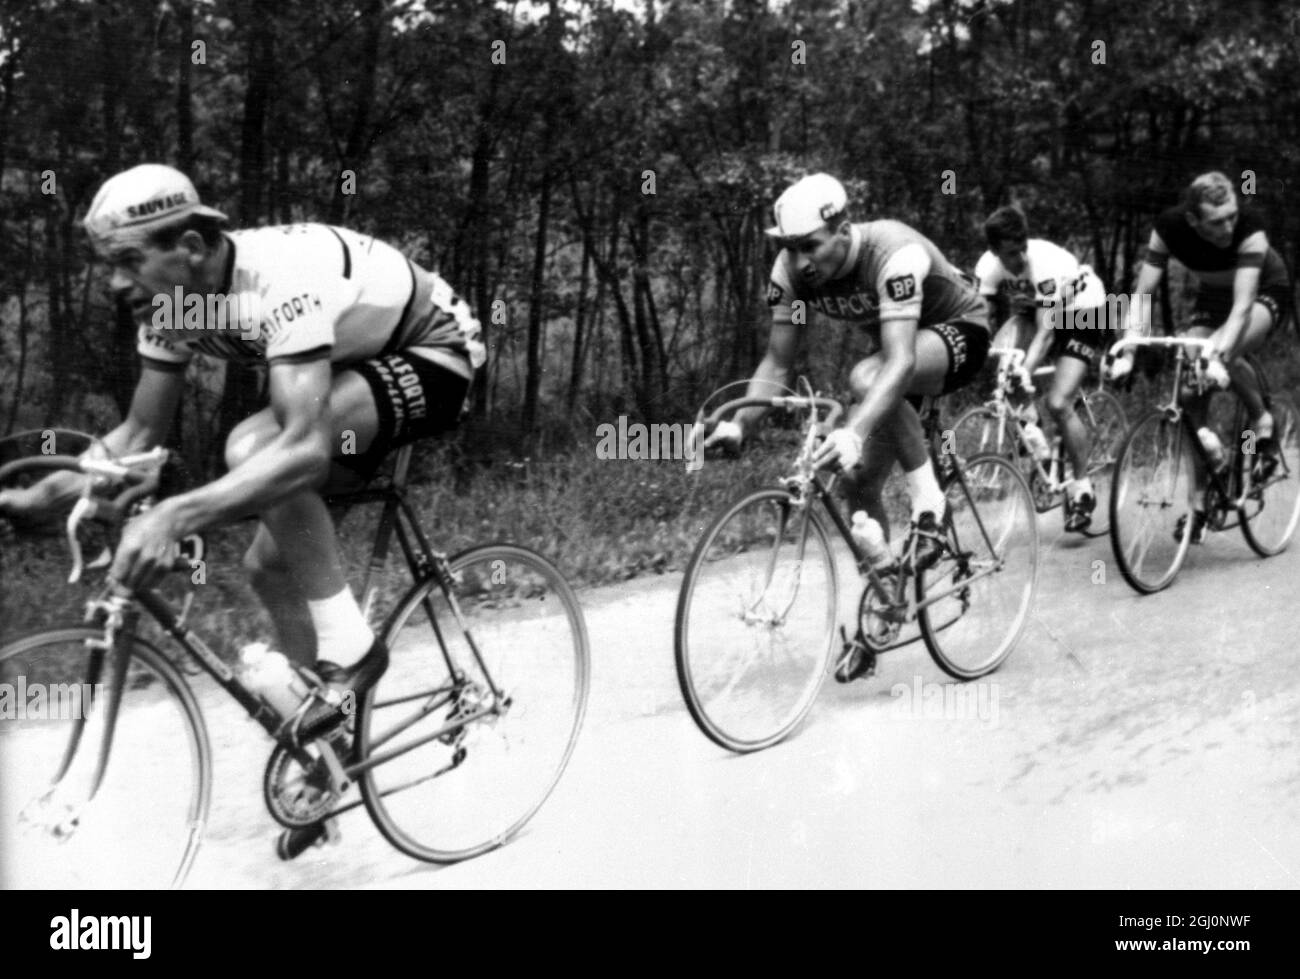 In der ersten Hälfte der ersten Runde des Tour de France Radrennens sind heute LtoR Andre Foucher - Frankreich ; Raymond Poulidor - Frankreich ; Tommy Simpson - Großbritannien und Edward Sels - Belgien zu sehen. Lüttich , Belgien 22. Juni 1965 Stockfoto